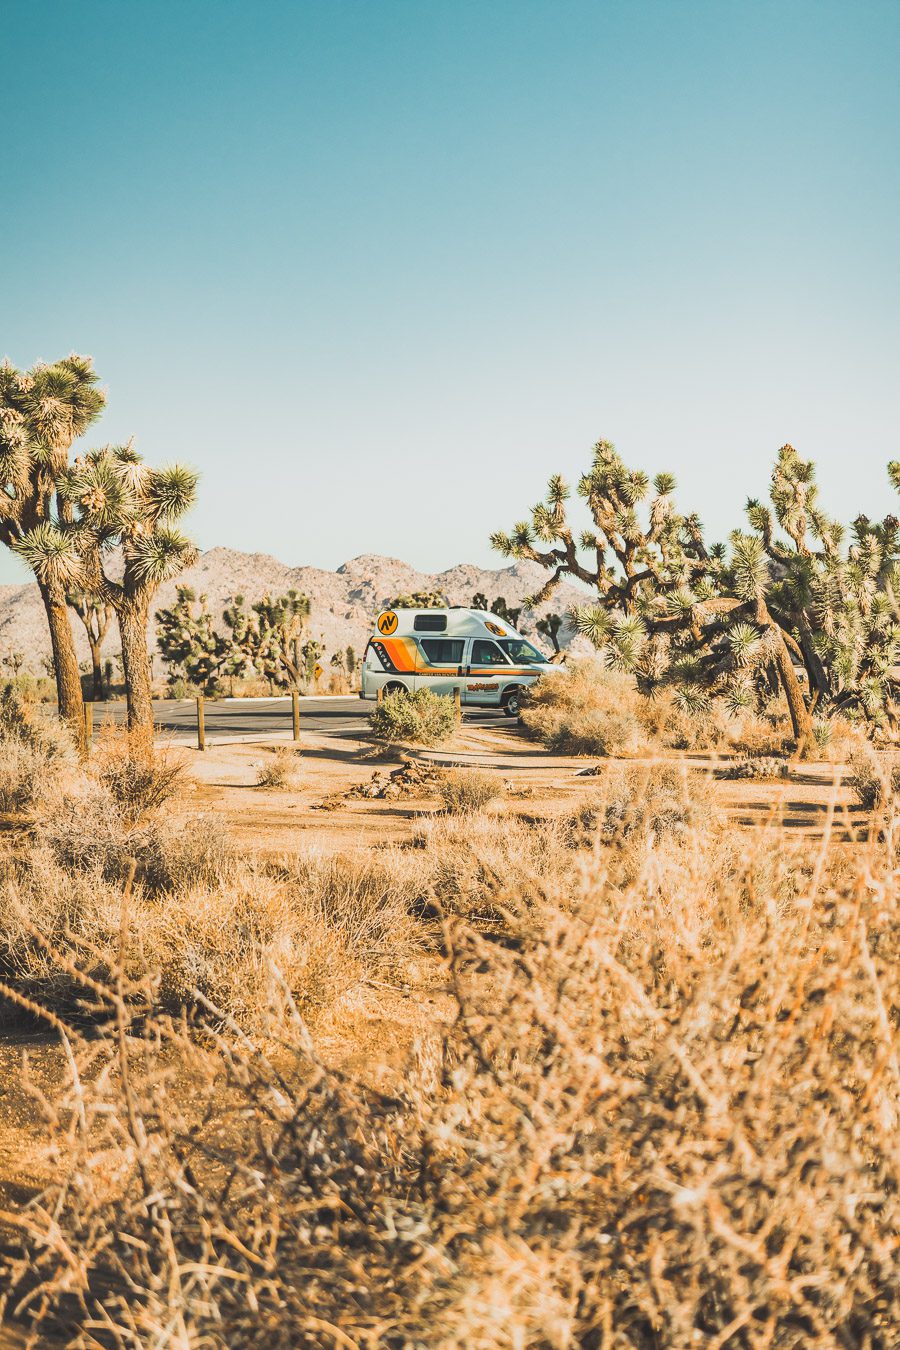 Le parc national de Joshua Tree est un paysage américain emblématique situé dans le désert de Mojave en Californie. Outre son emblématique Joshua Tree, cette oasis du désert offre des vues spectaculaires sur les chaînes de montagnes et les canyons environnants, ainsi qu'une abondance d'animaux sauvages incroyables. Préparez-vous à vivre l'une des expériences désertiques les plus uniques et les plus immersives d'un road trip aux États-Unis - bienvenue à Joshua Tree National Park !